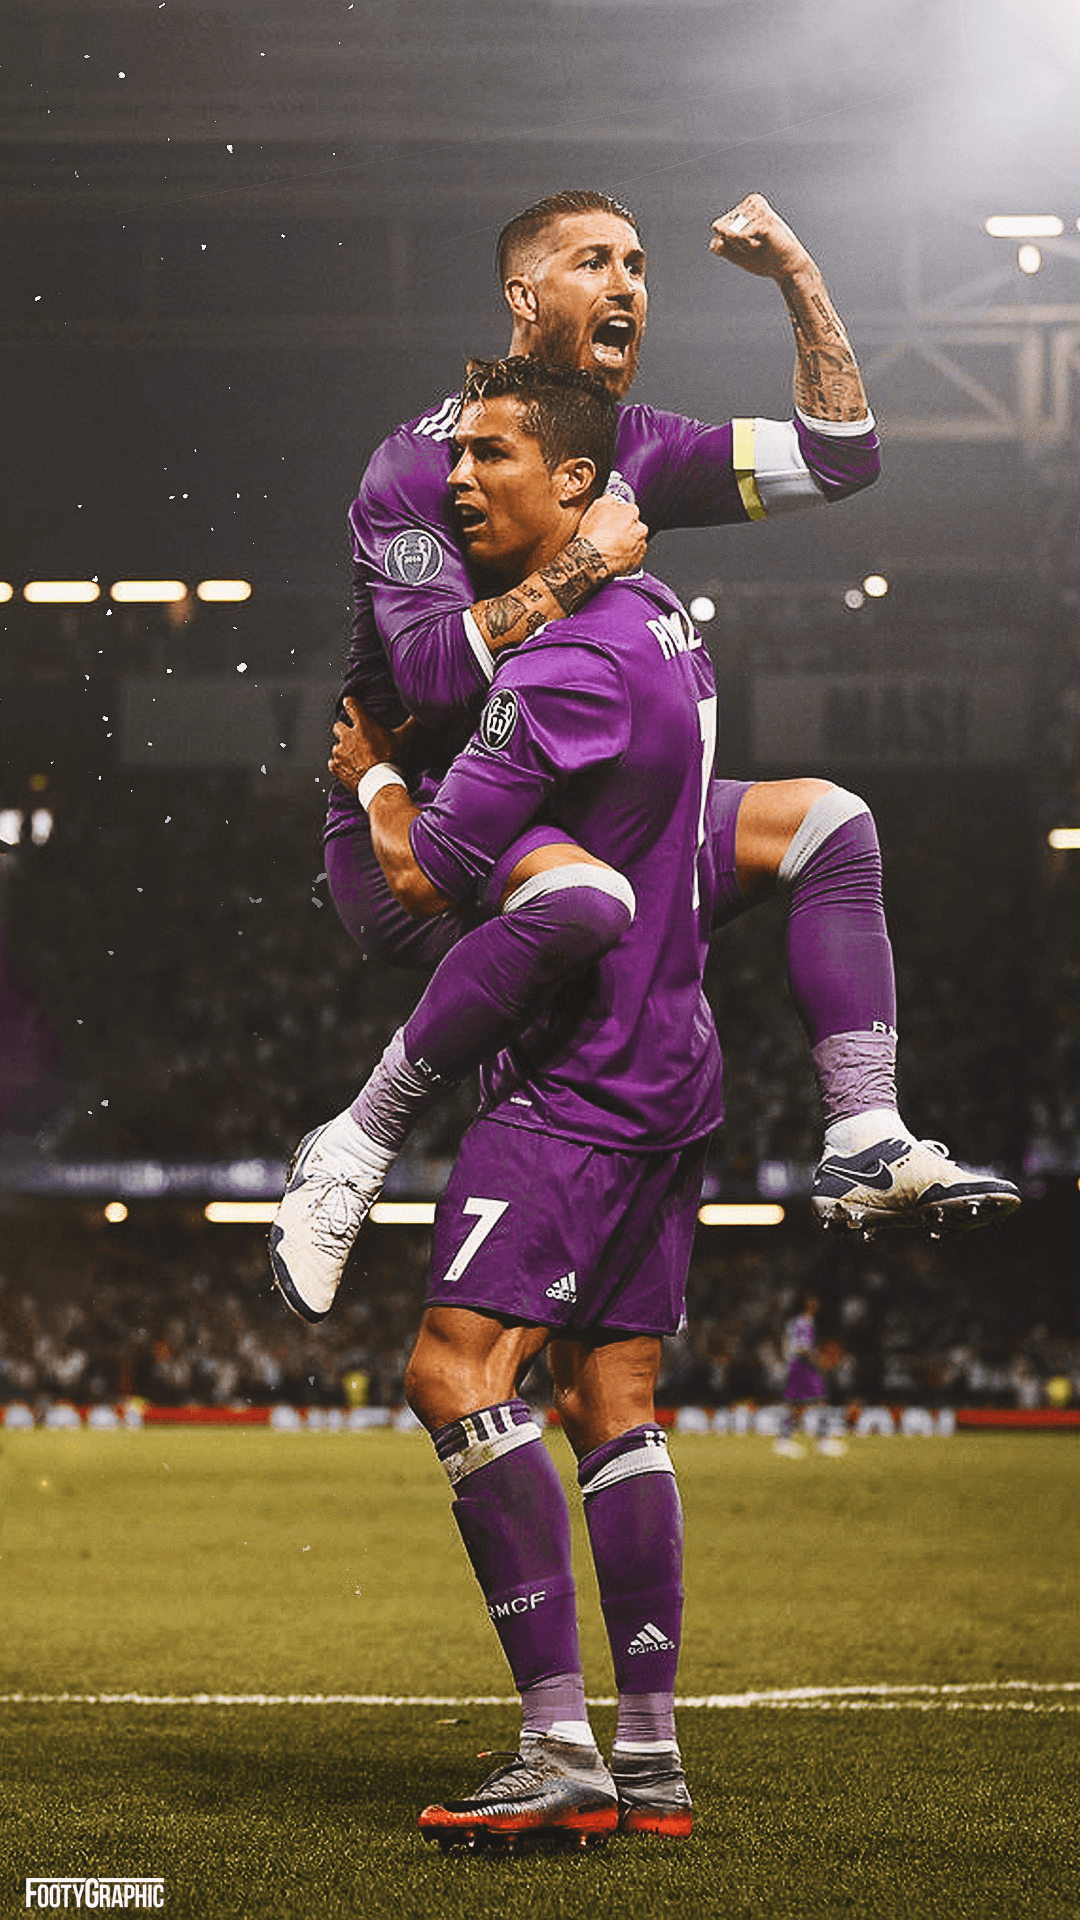 Ronaldo & Ramos lockscreen • FootyGraphic